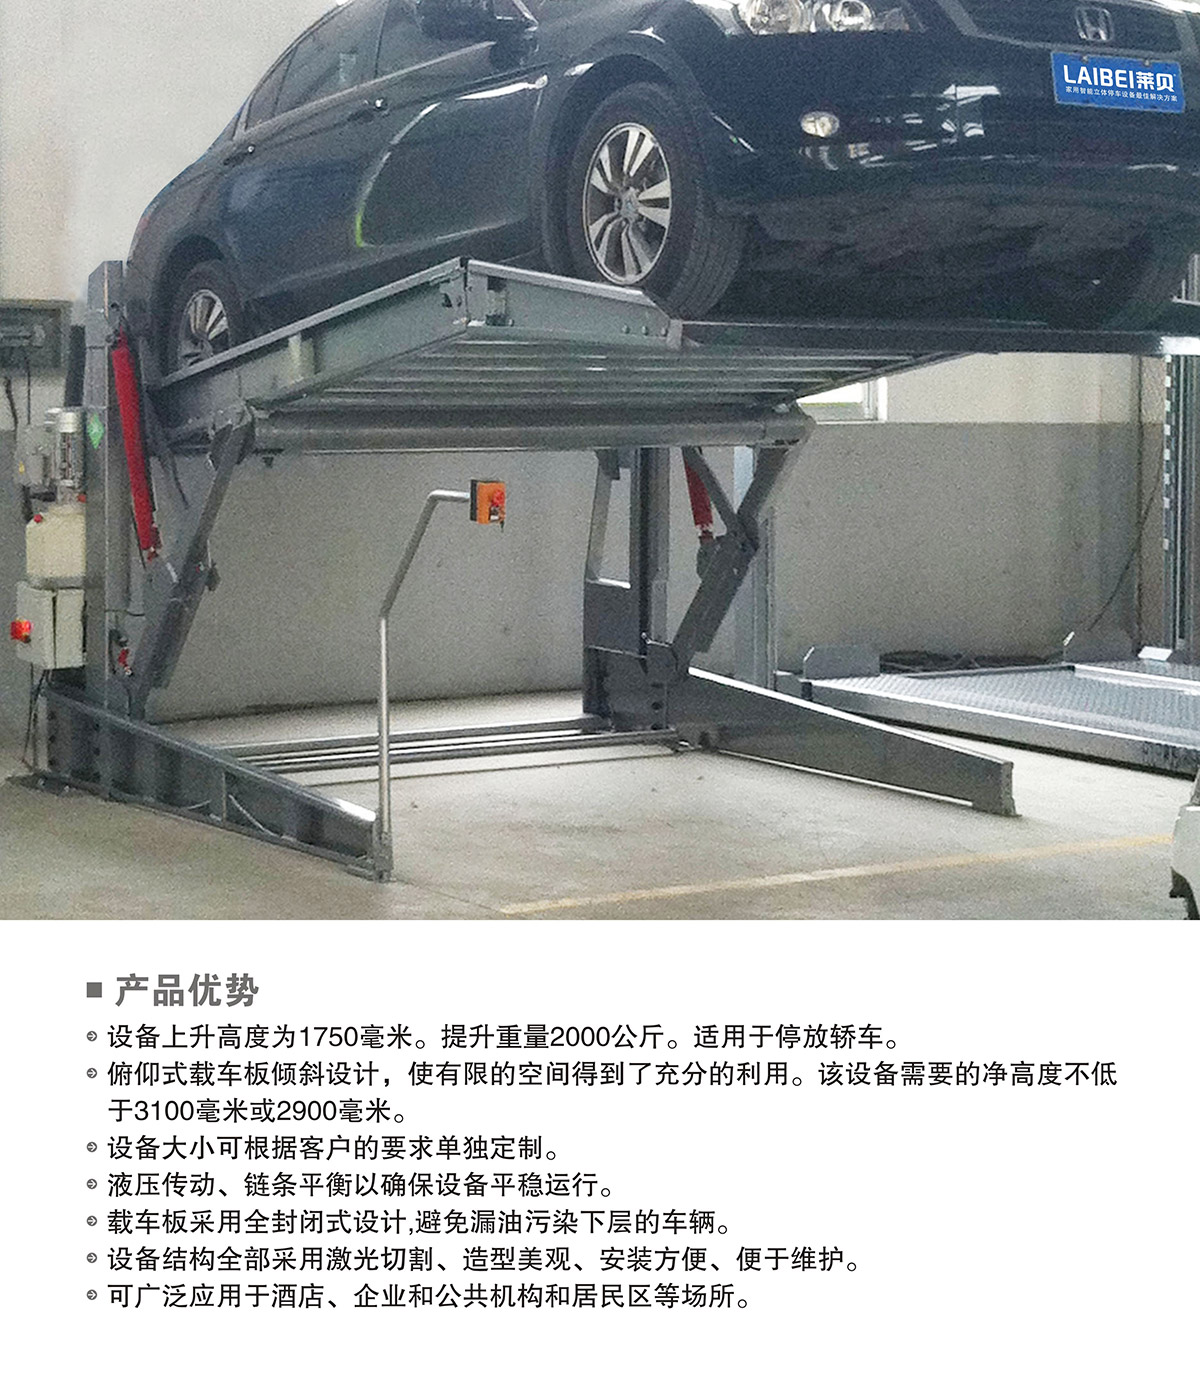 机械停车PJS俯仰简易升降立体车库设备产品优势.jpg